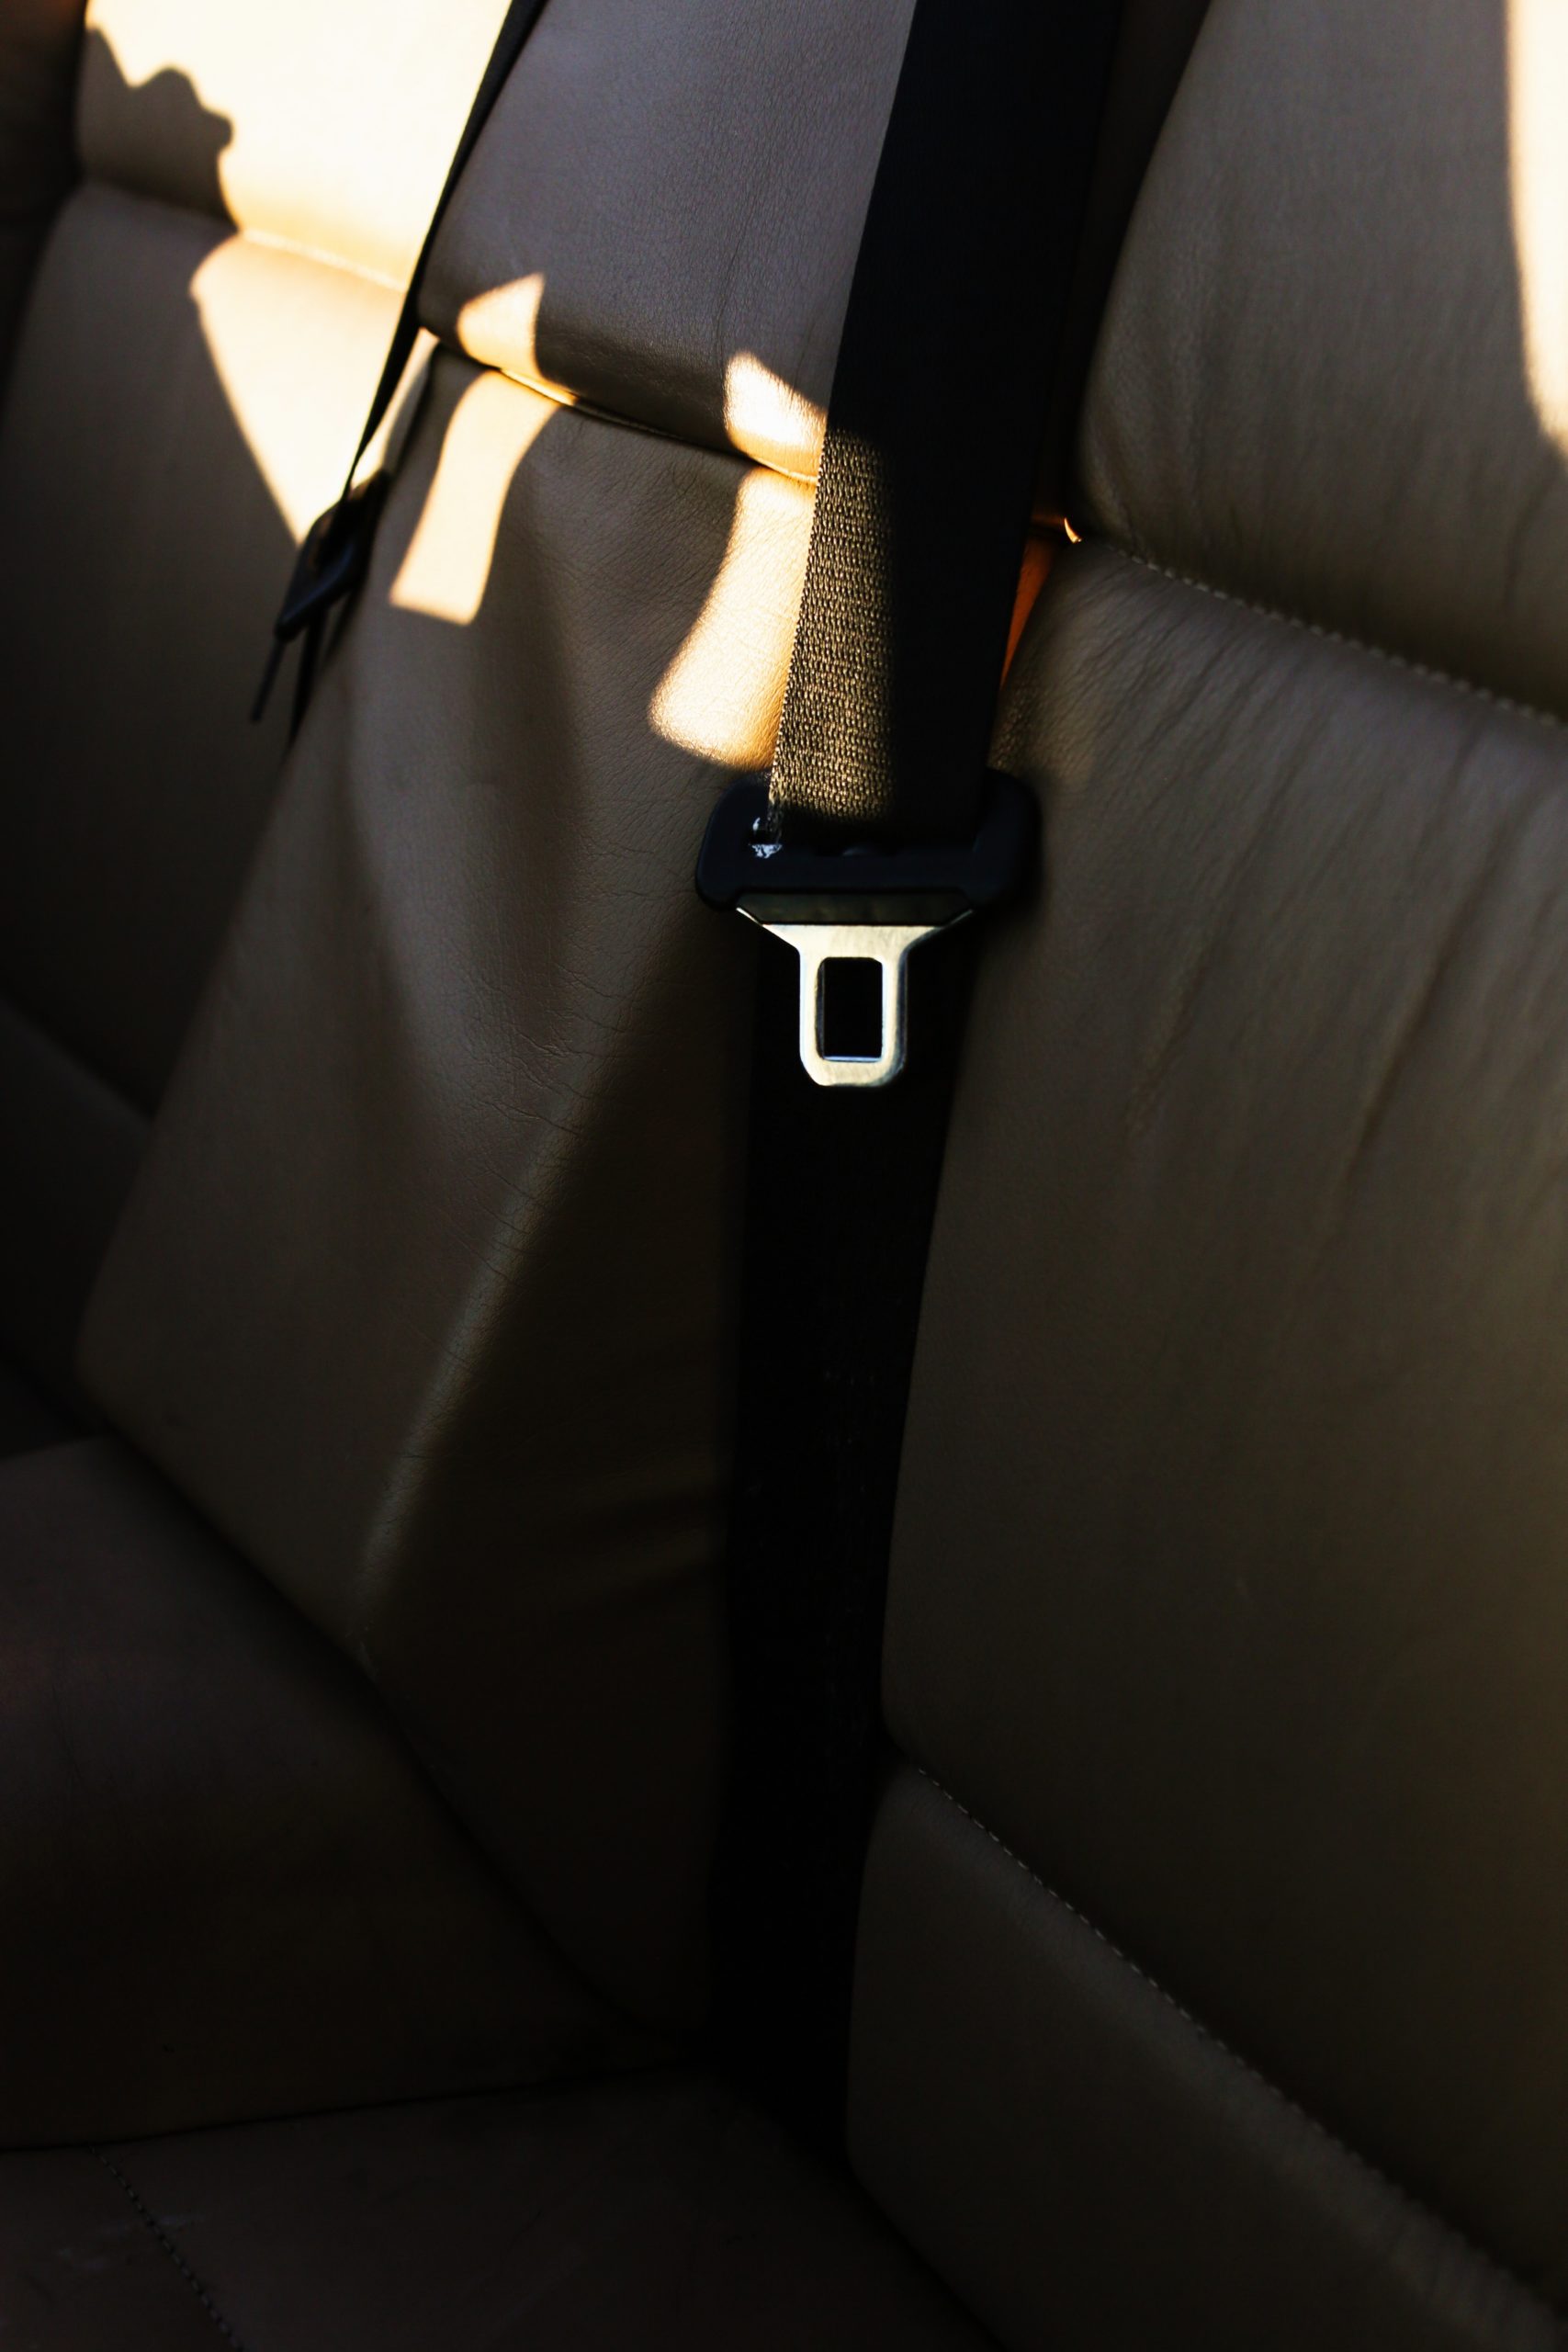 seatbelt in car